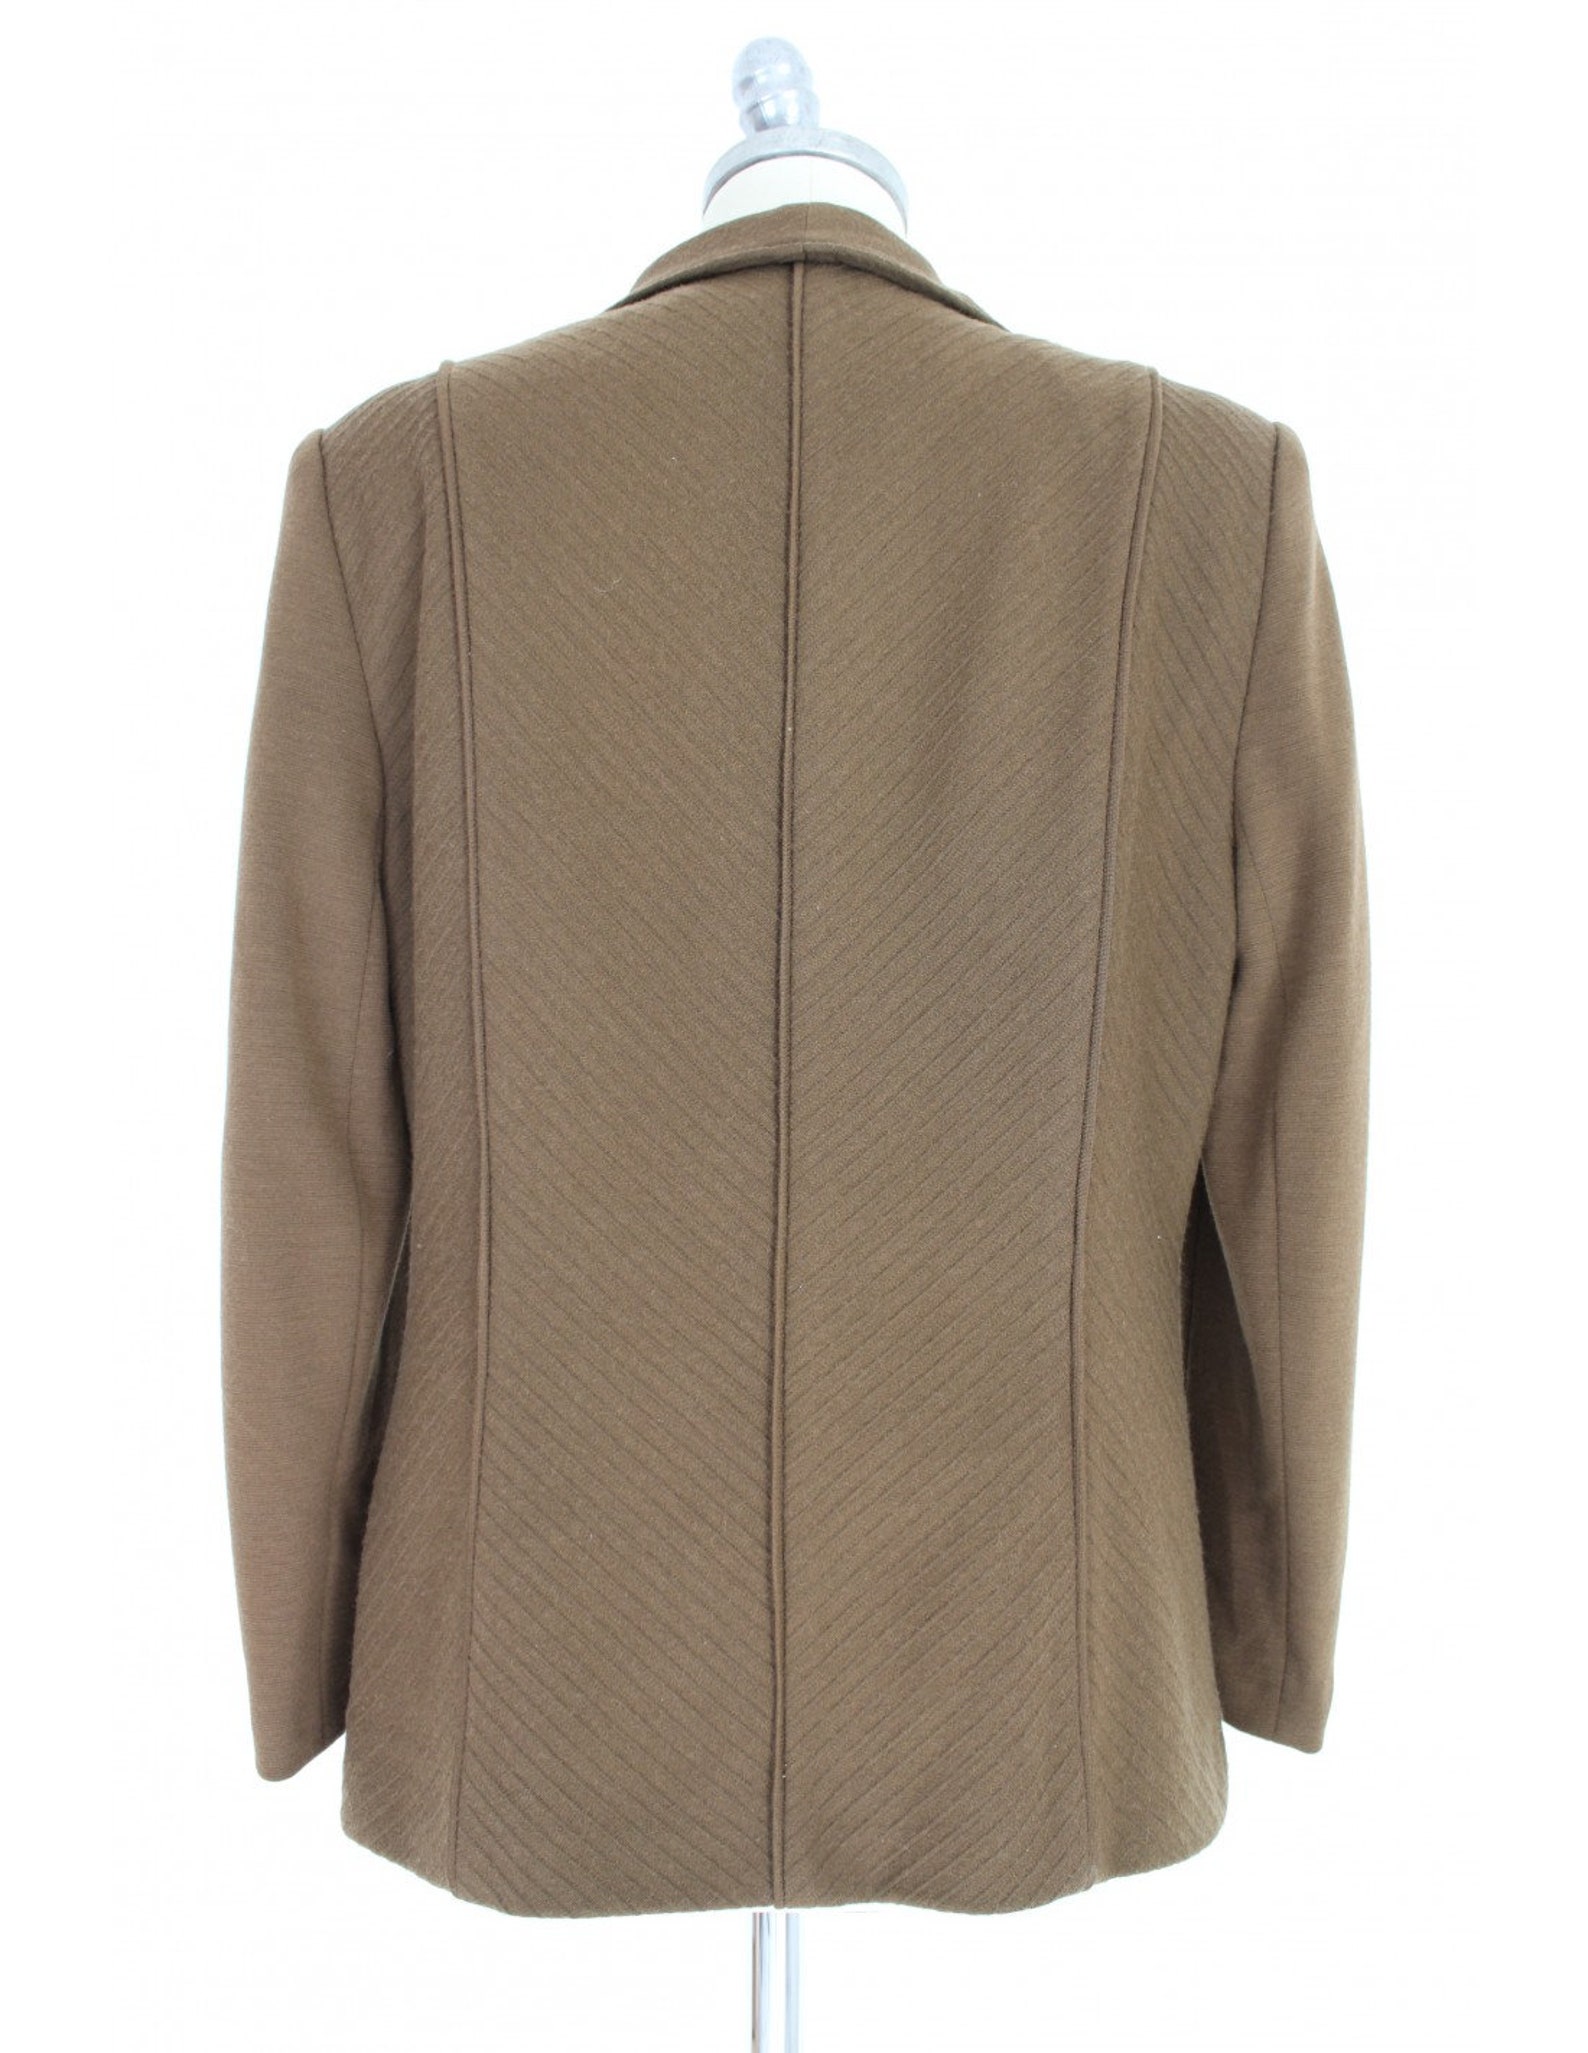 Pierre Cardin Vintage Jacket Classic Wool Brown | Etsy